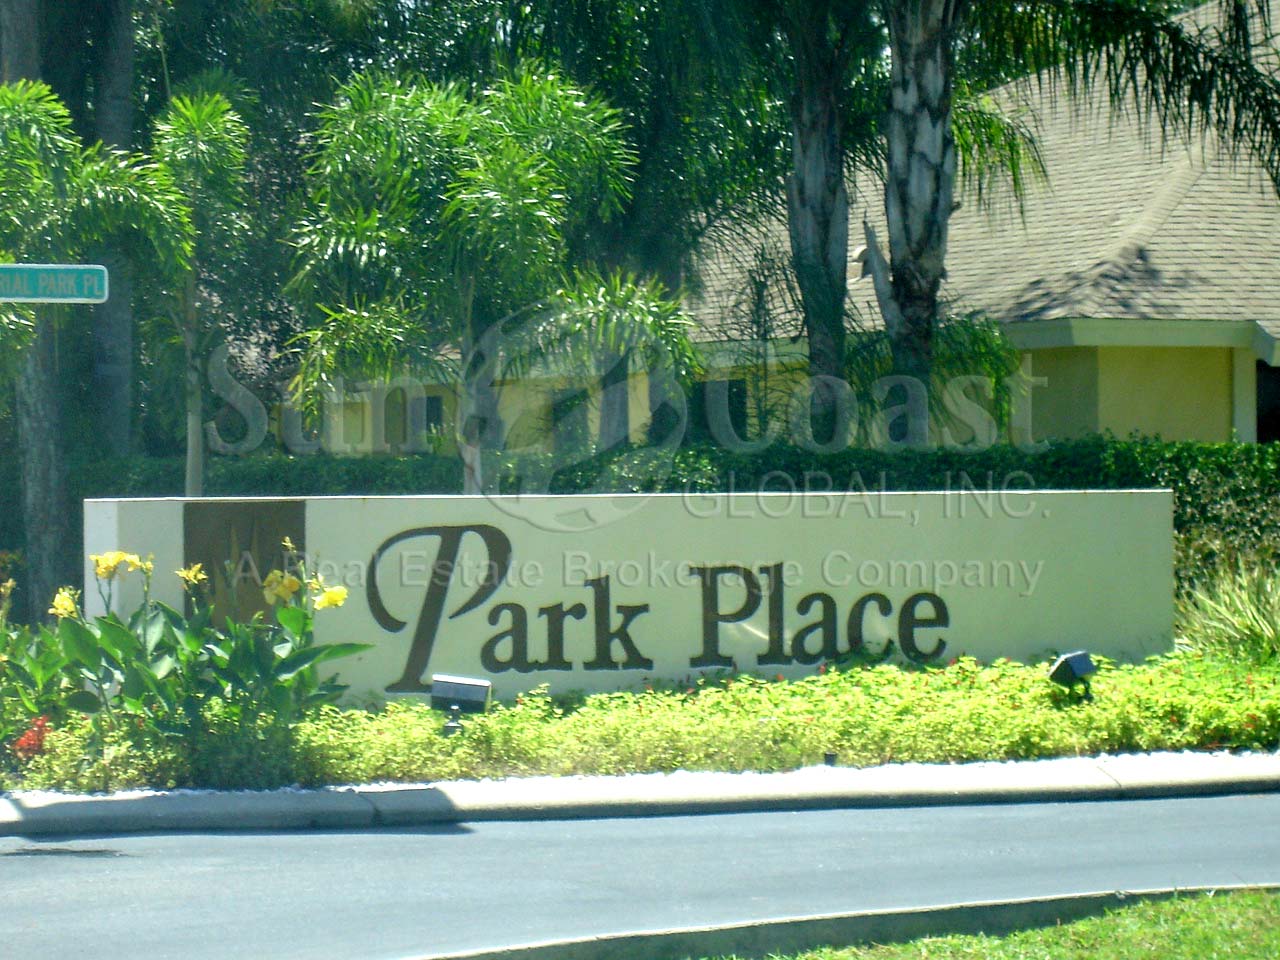 Imperial Park Place Villas sign